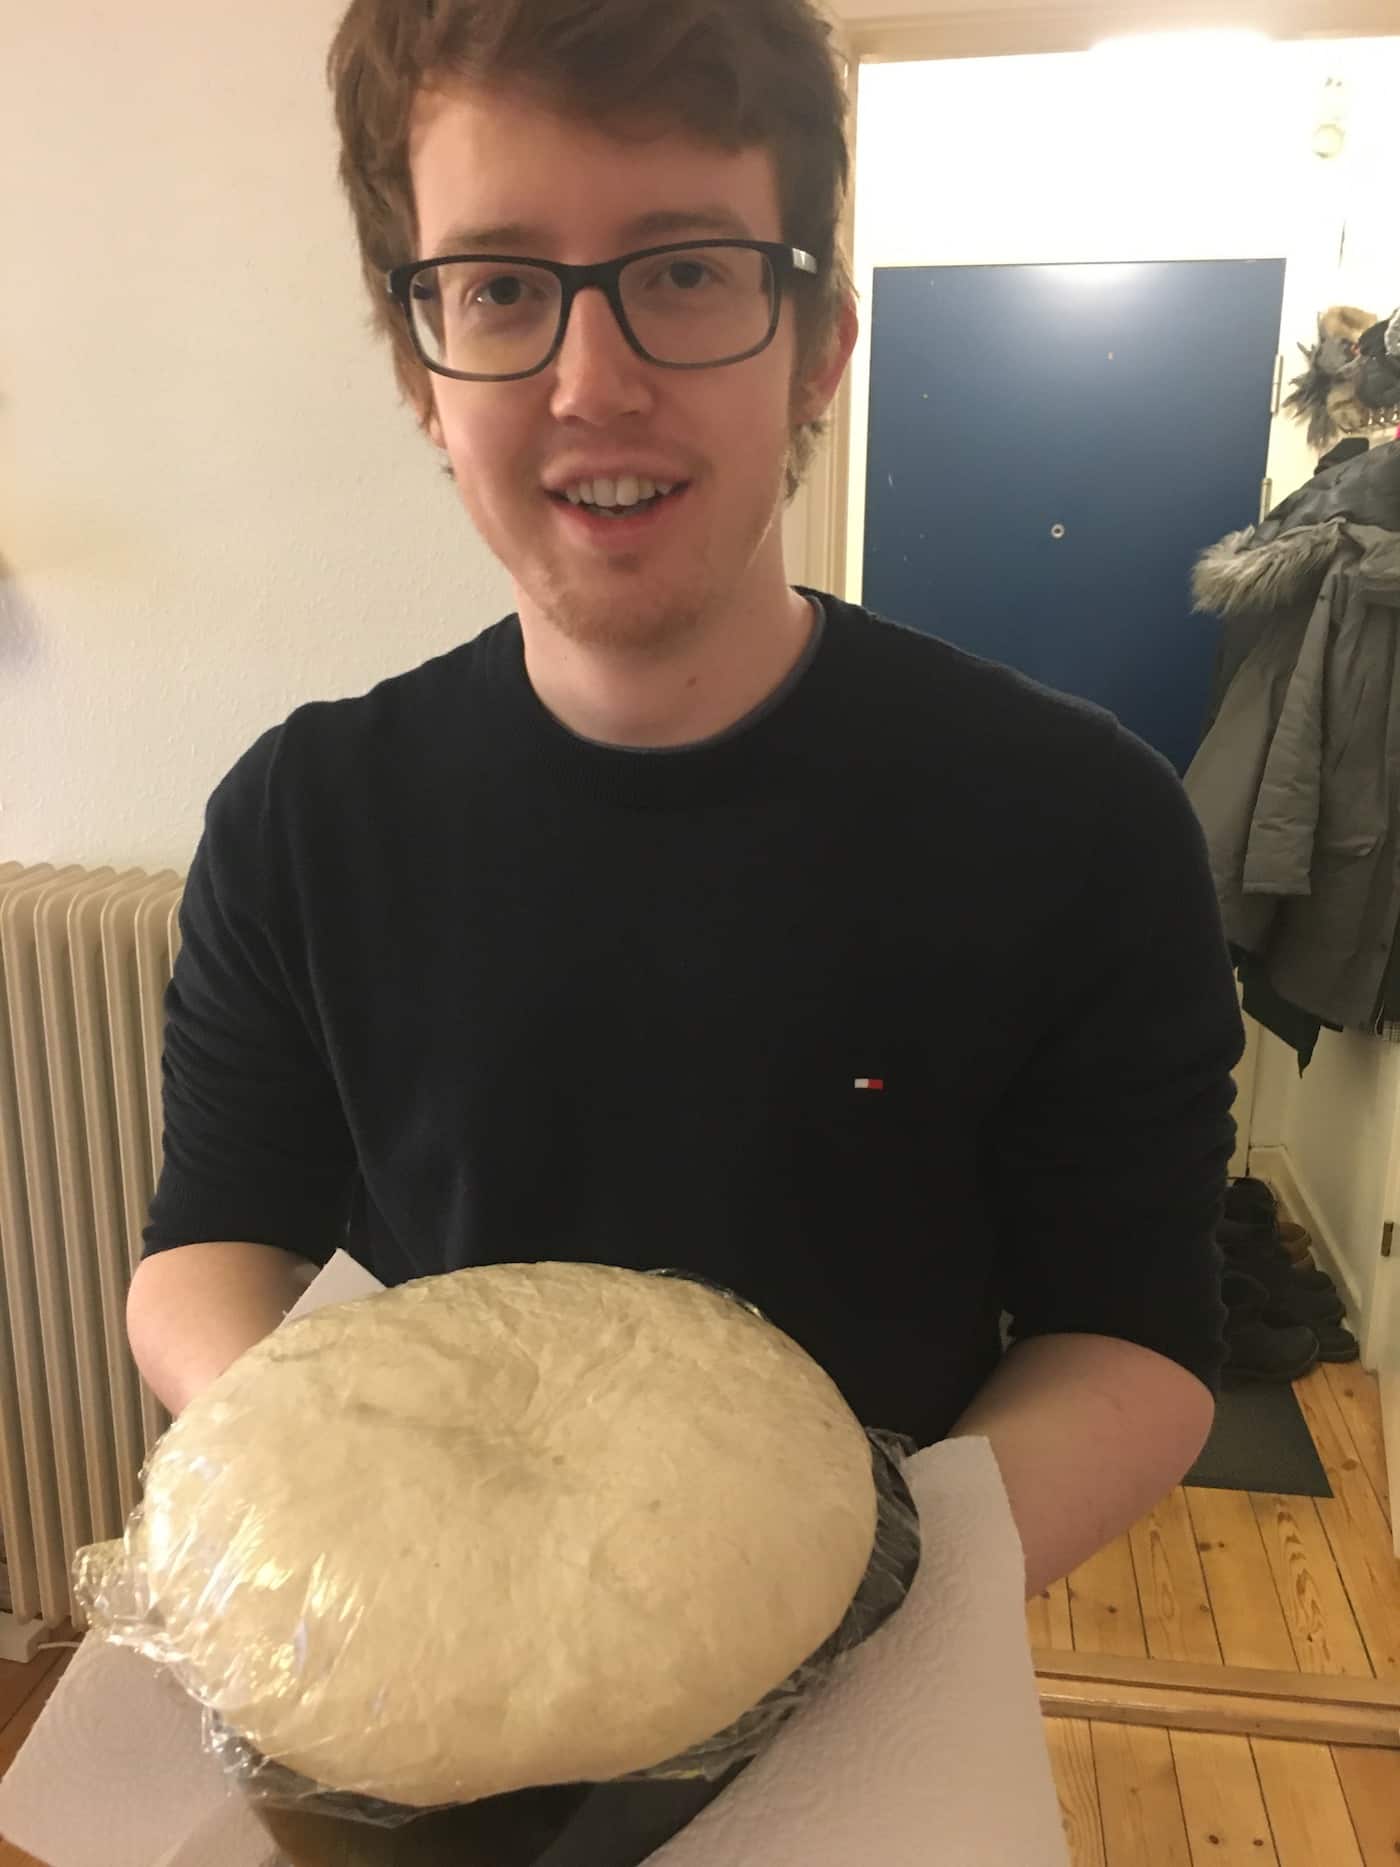 Matt is making a dough for pizza march 2020